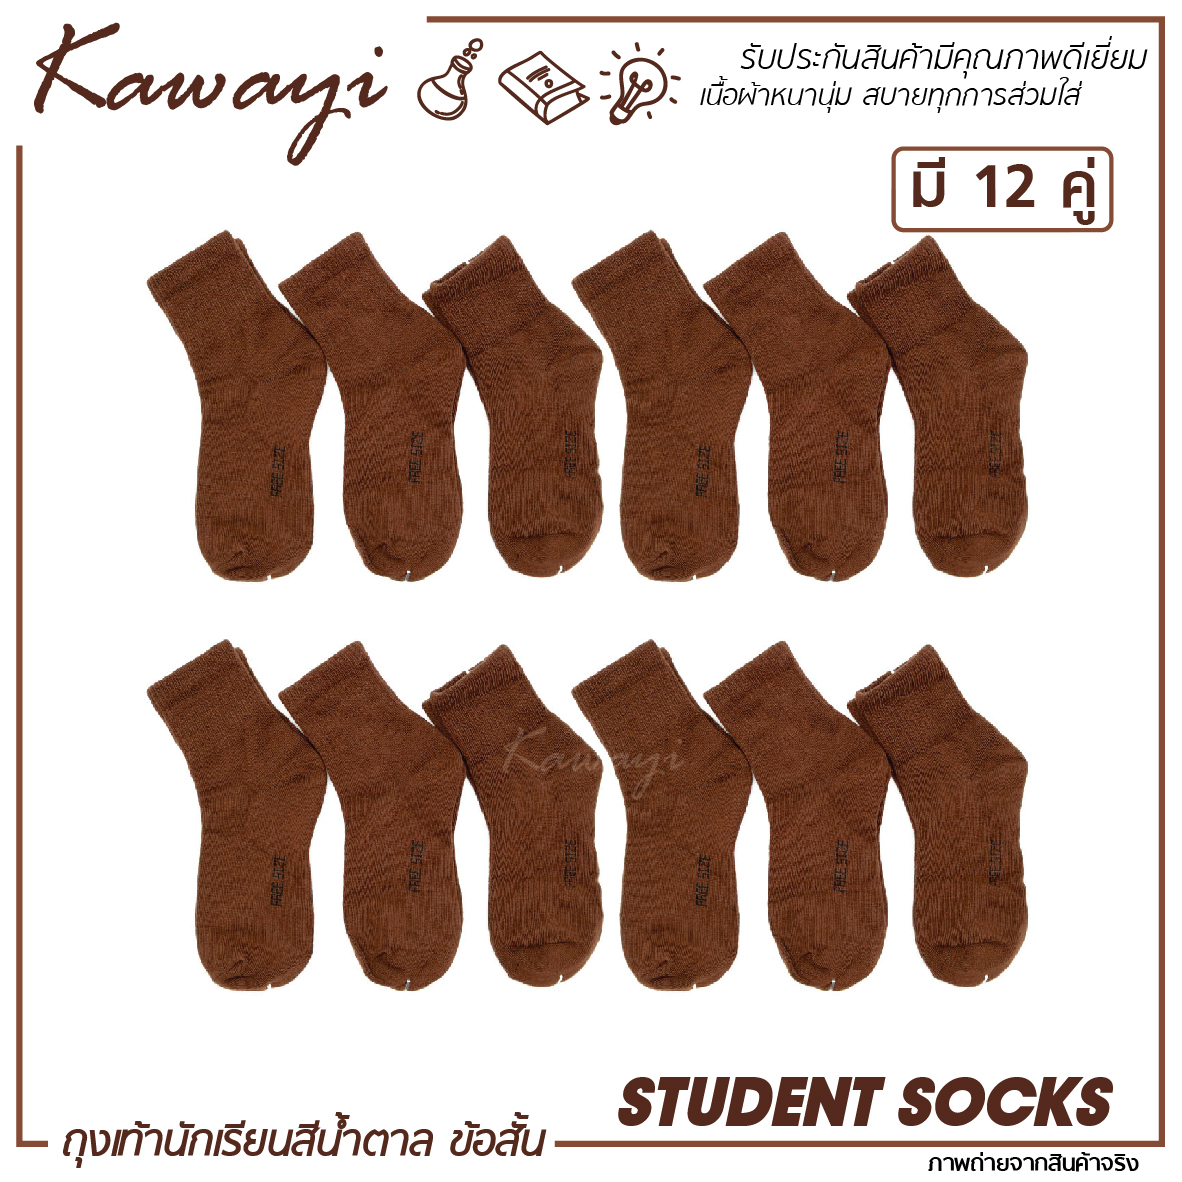 🔥 Student Socks🔥 ถุงเท้านักเรียนข้อสั้น สีน้ำตาล เนื้อผ้าหนานุ่ม รับประกันคุณภาพ💯🔥🔥